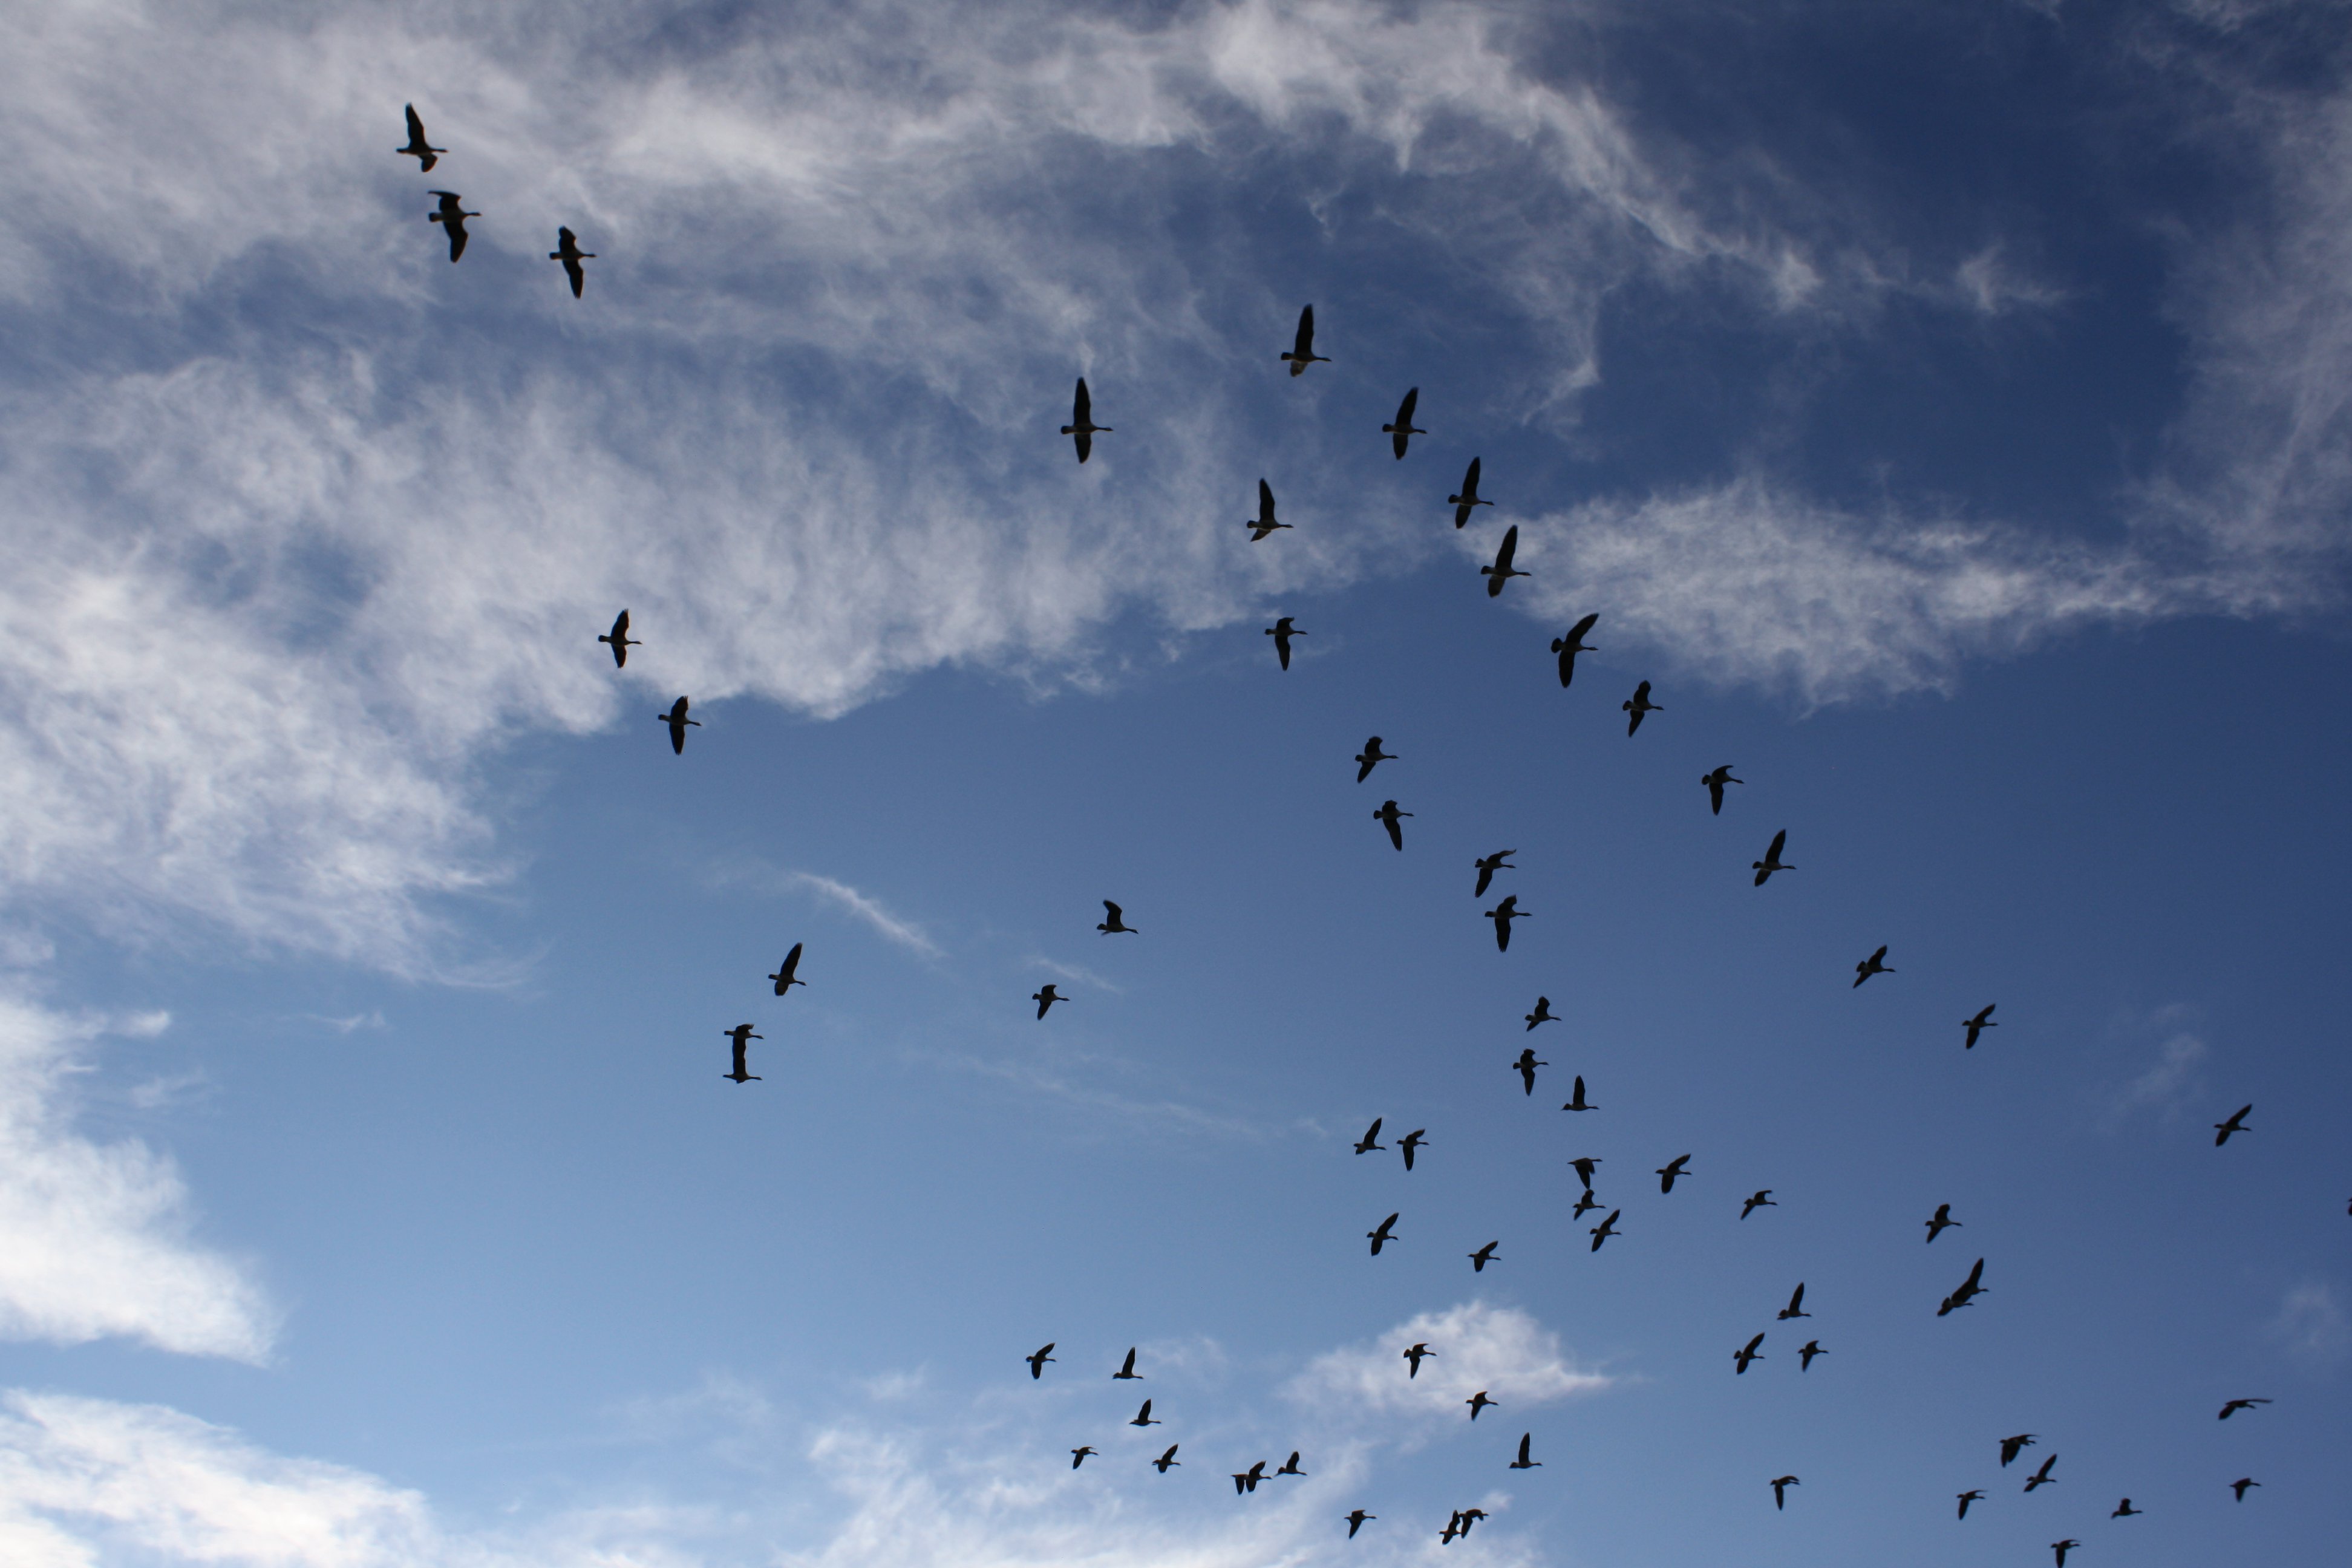 geese-flying-in-the-sky.jpg